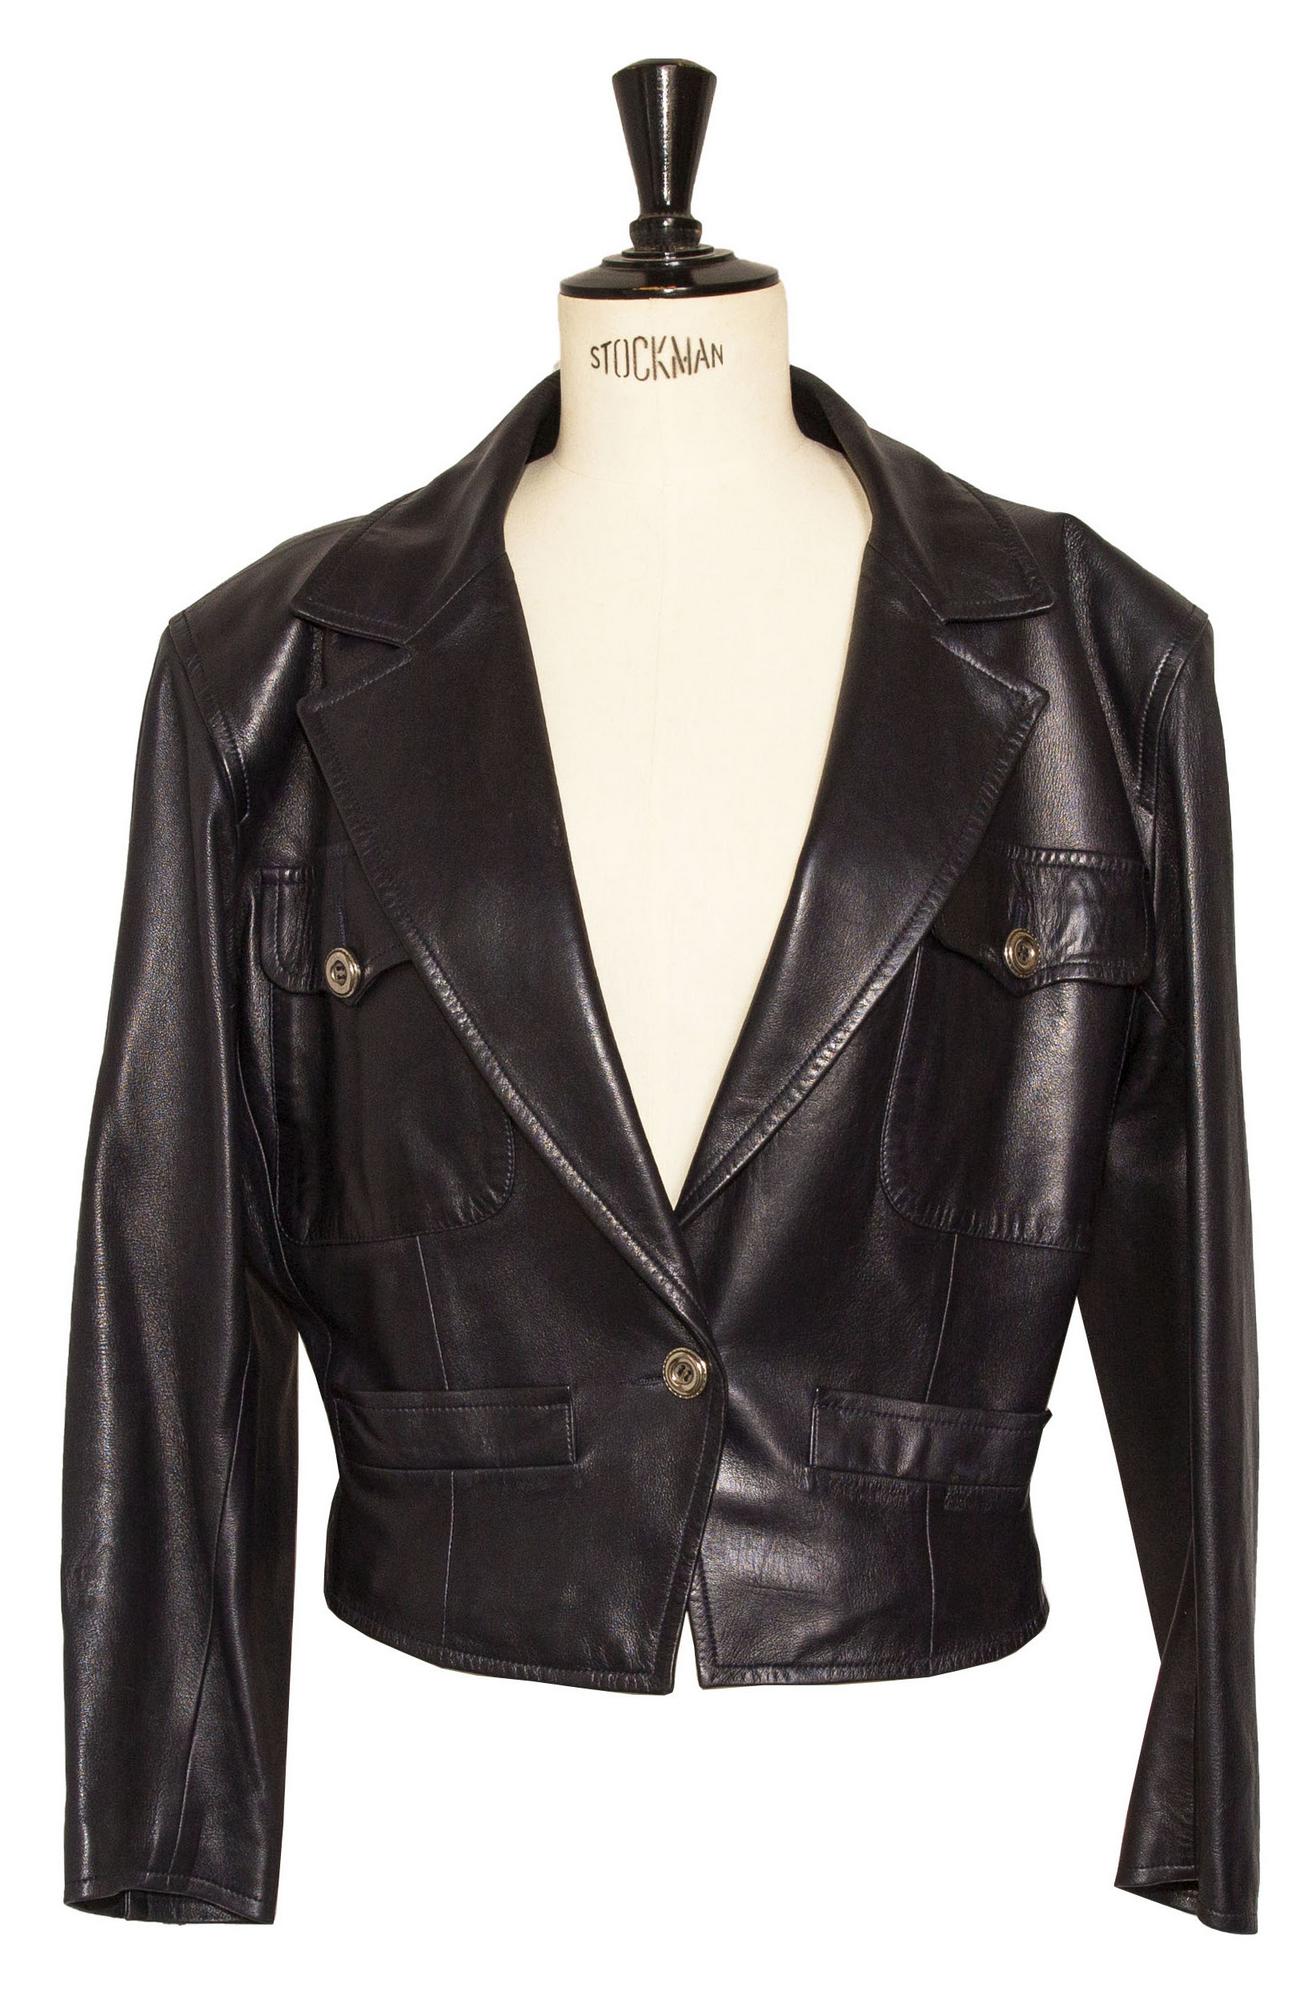 Yves Saint Laurent Rive Gauche LEATHER JACKET Description: Leather jacket,...